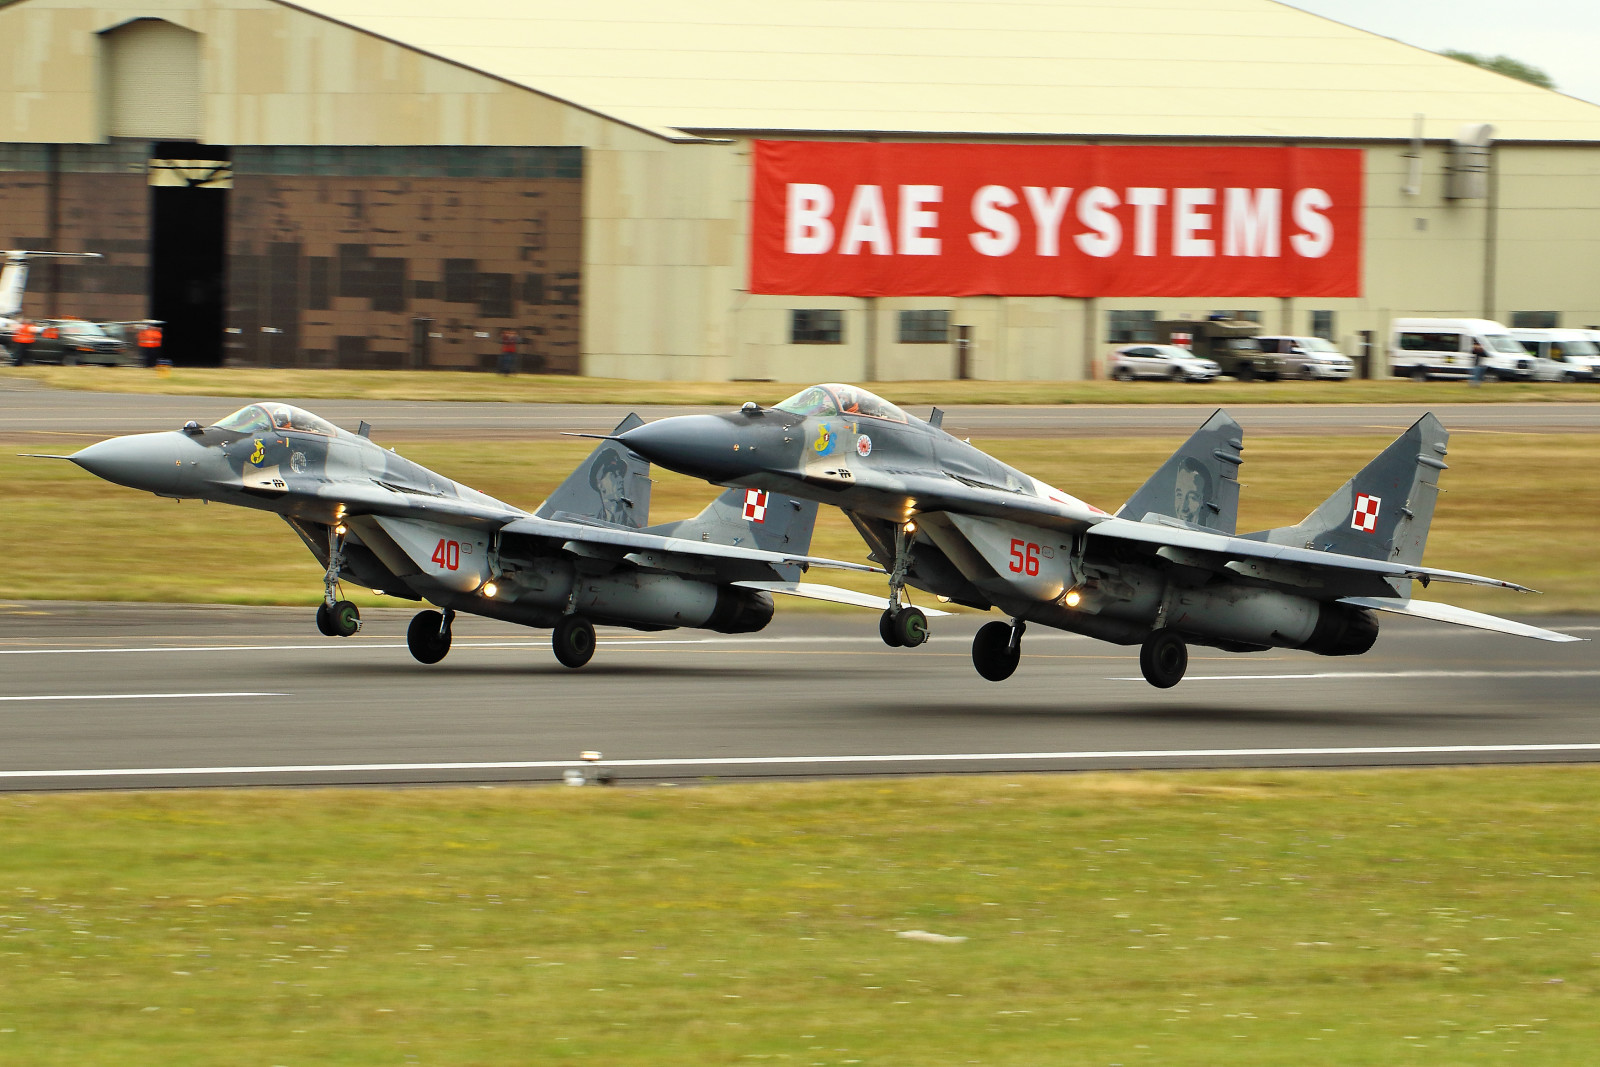 The MiG-29, bangkitnya, Pejuang, MiG-29